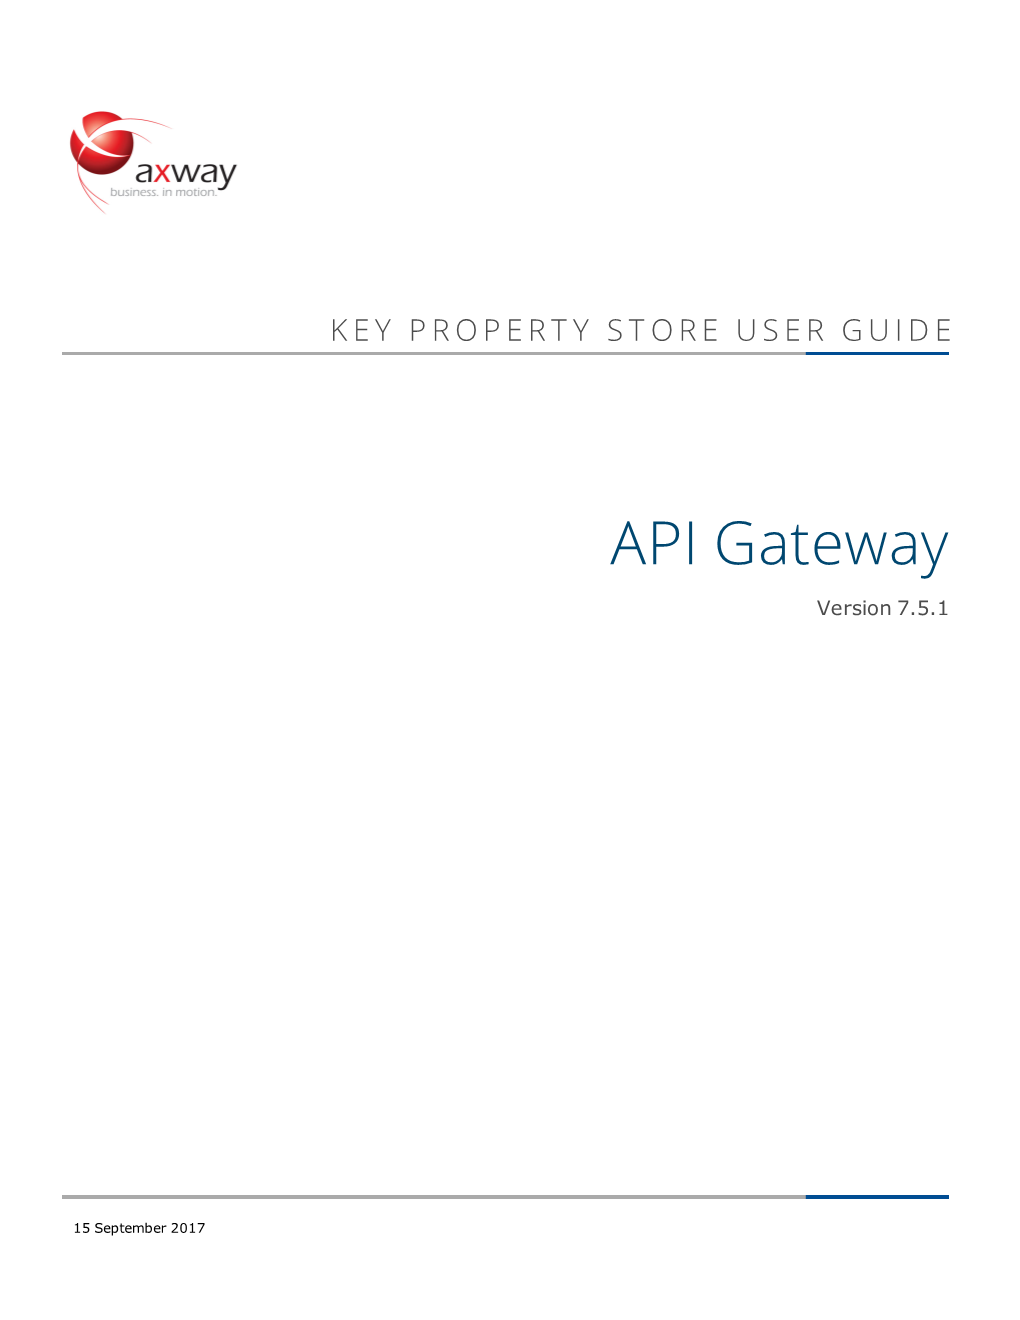 API Gateway Key Property Store User Guide